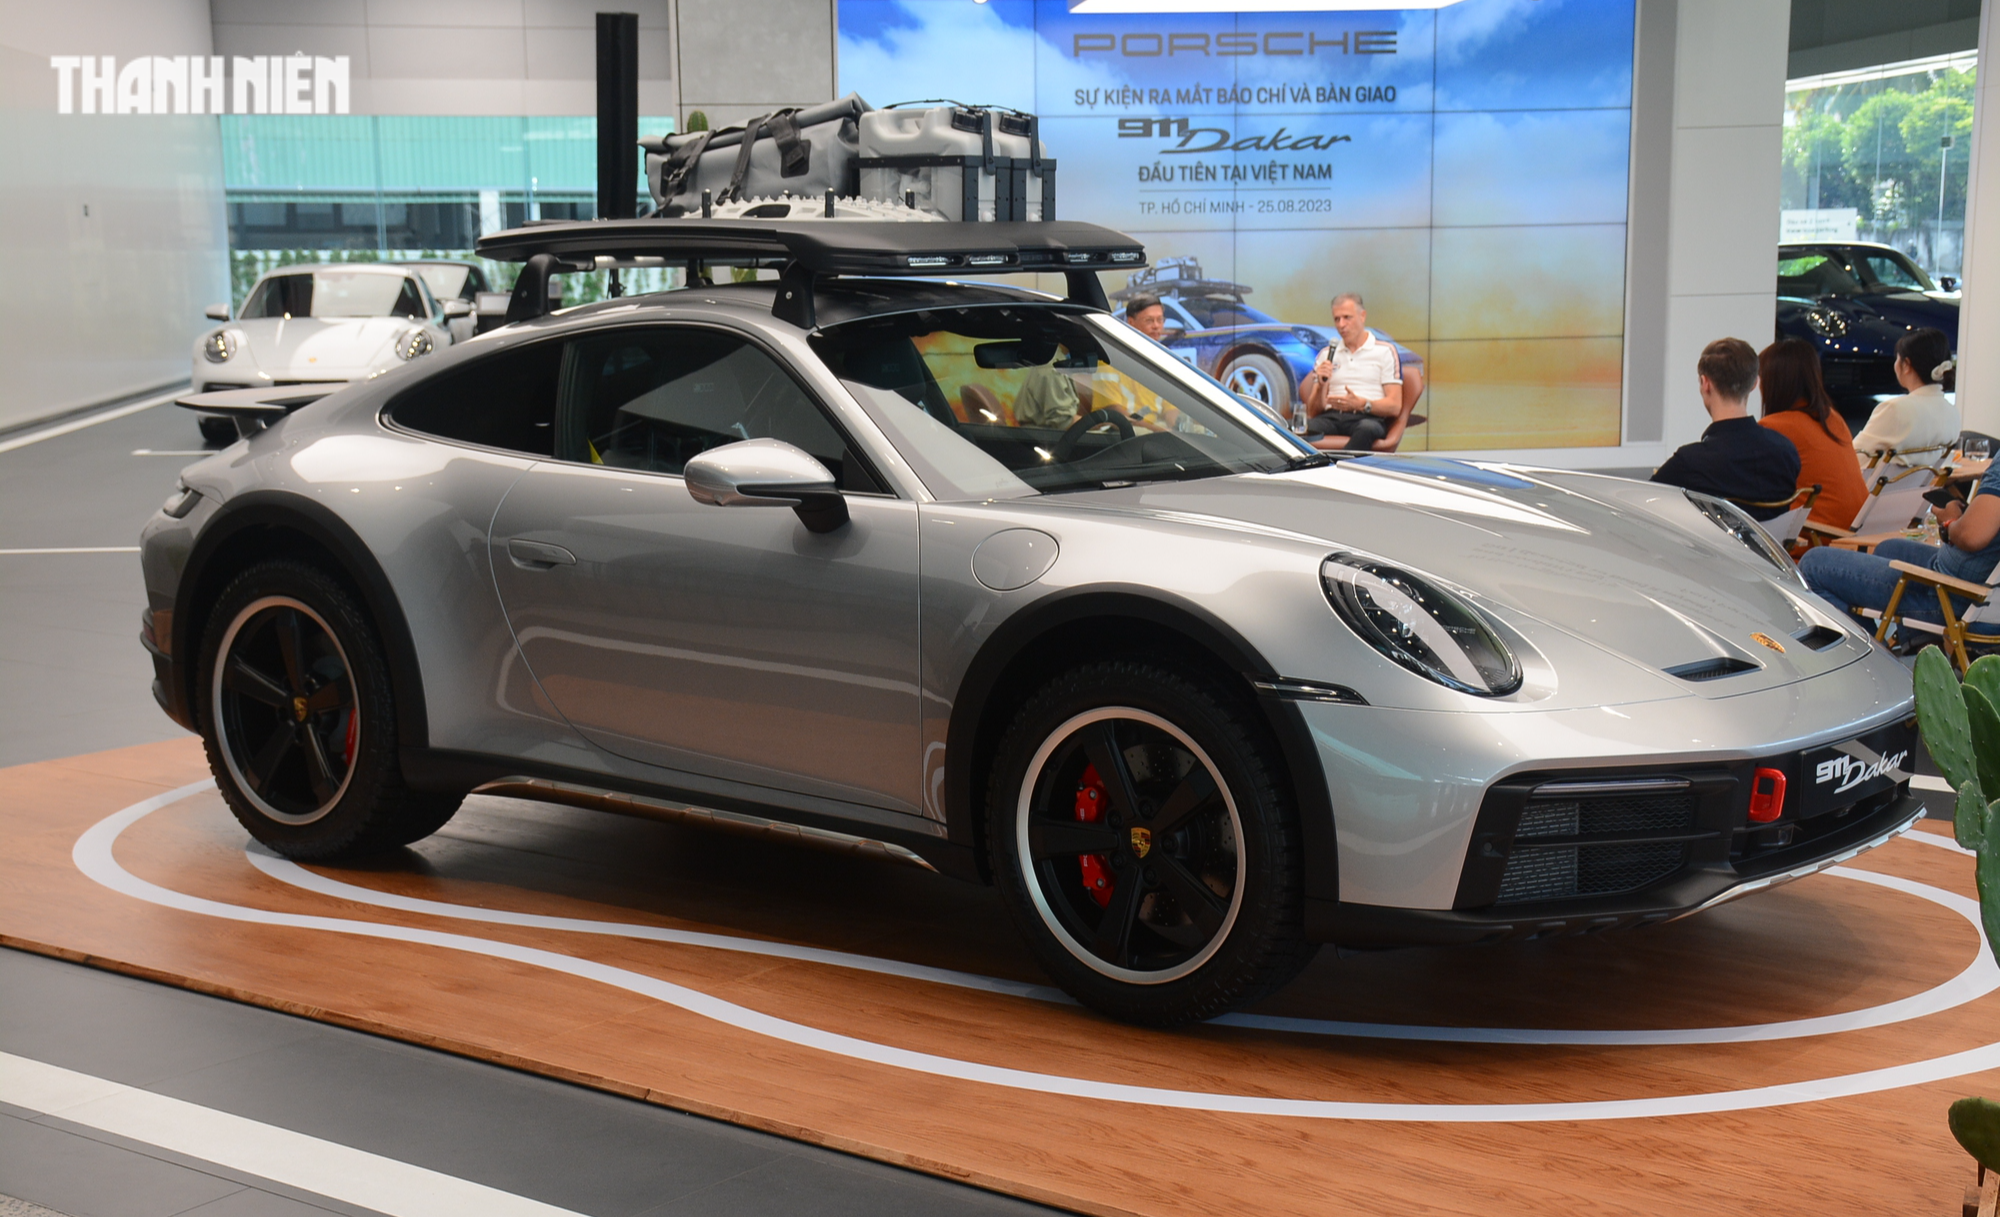 'Hàng hiếm' Porsche 911 Dakar đầu tiên về Việt Nam giá 16 tỉ đồng đã có chủ - Ảnh 3.